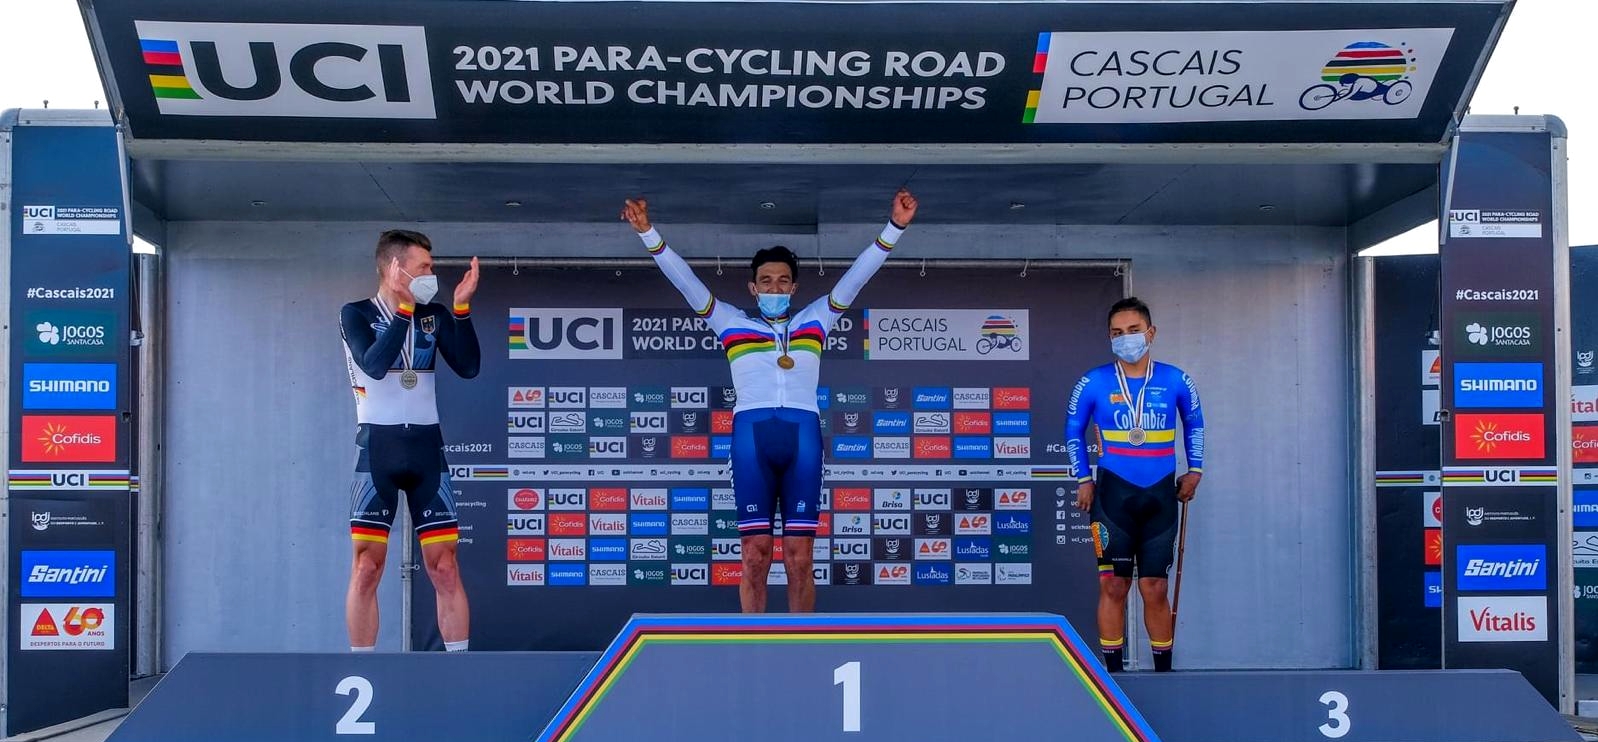 Para-cycling road 2021 world championship